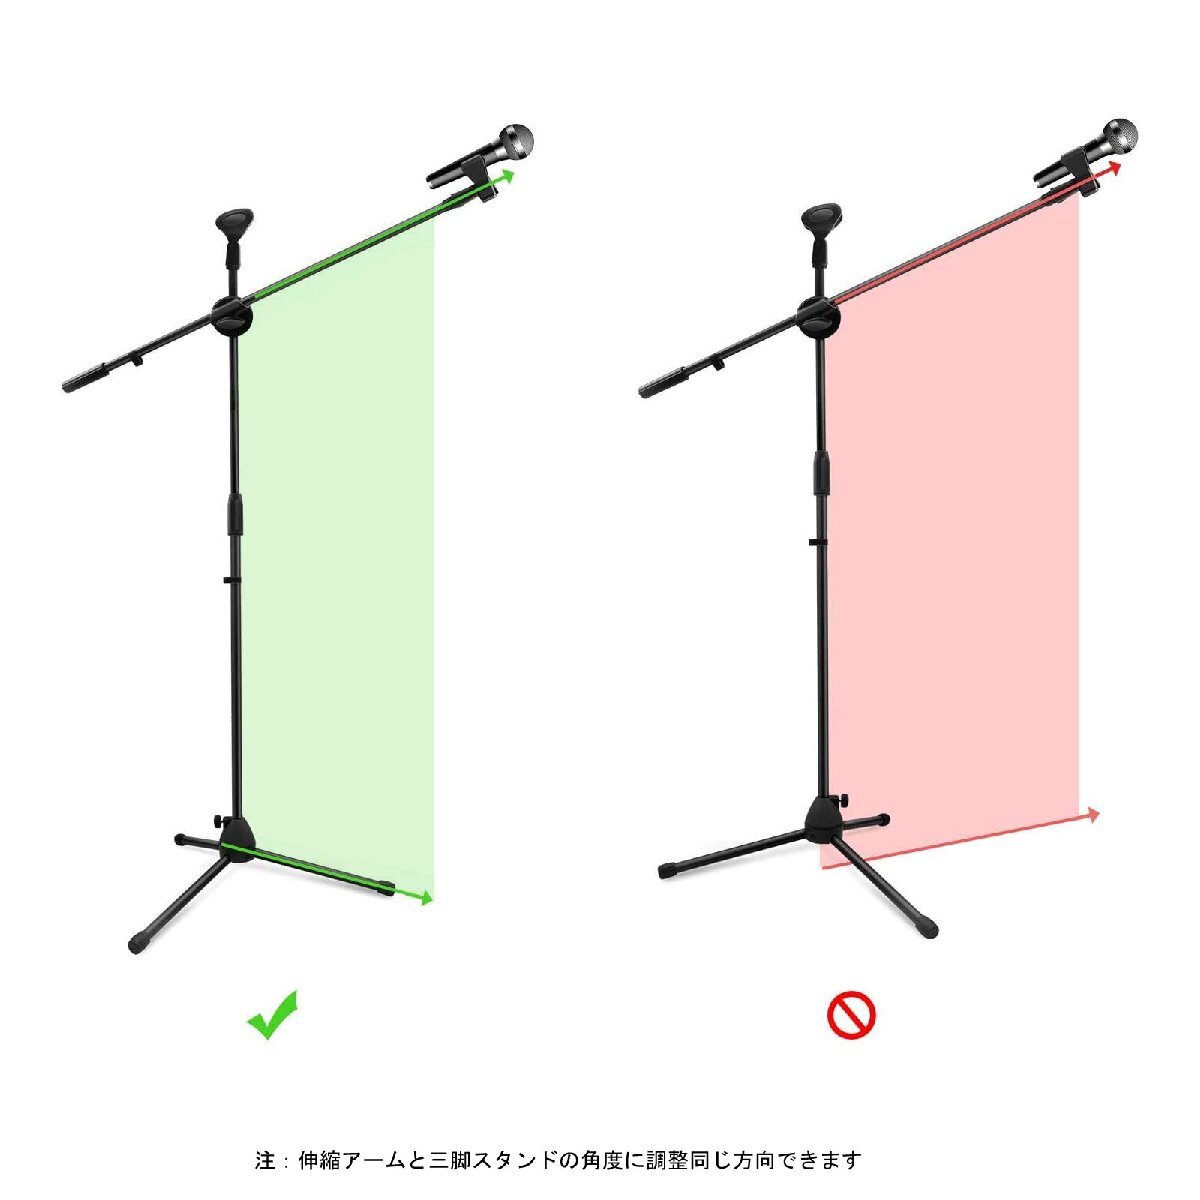  микрофонная стойка распорка складной легкий эластичный arm высота настройка возможность 2 шт .